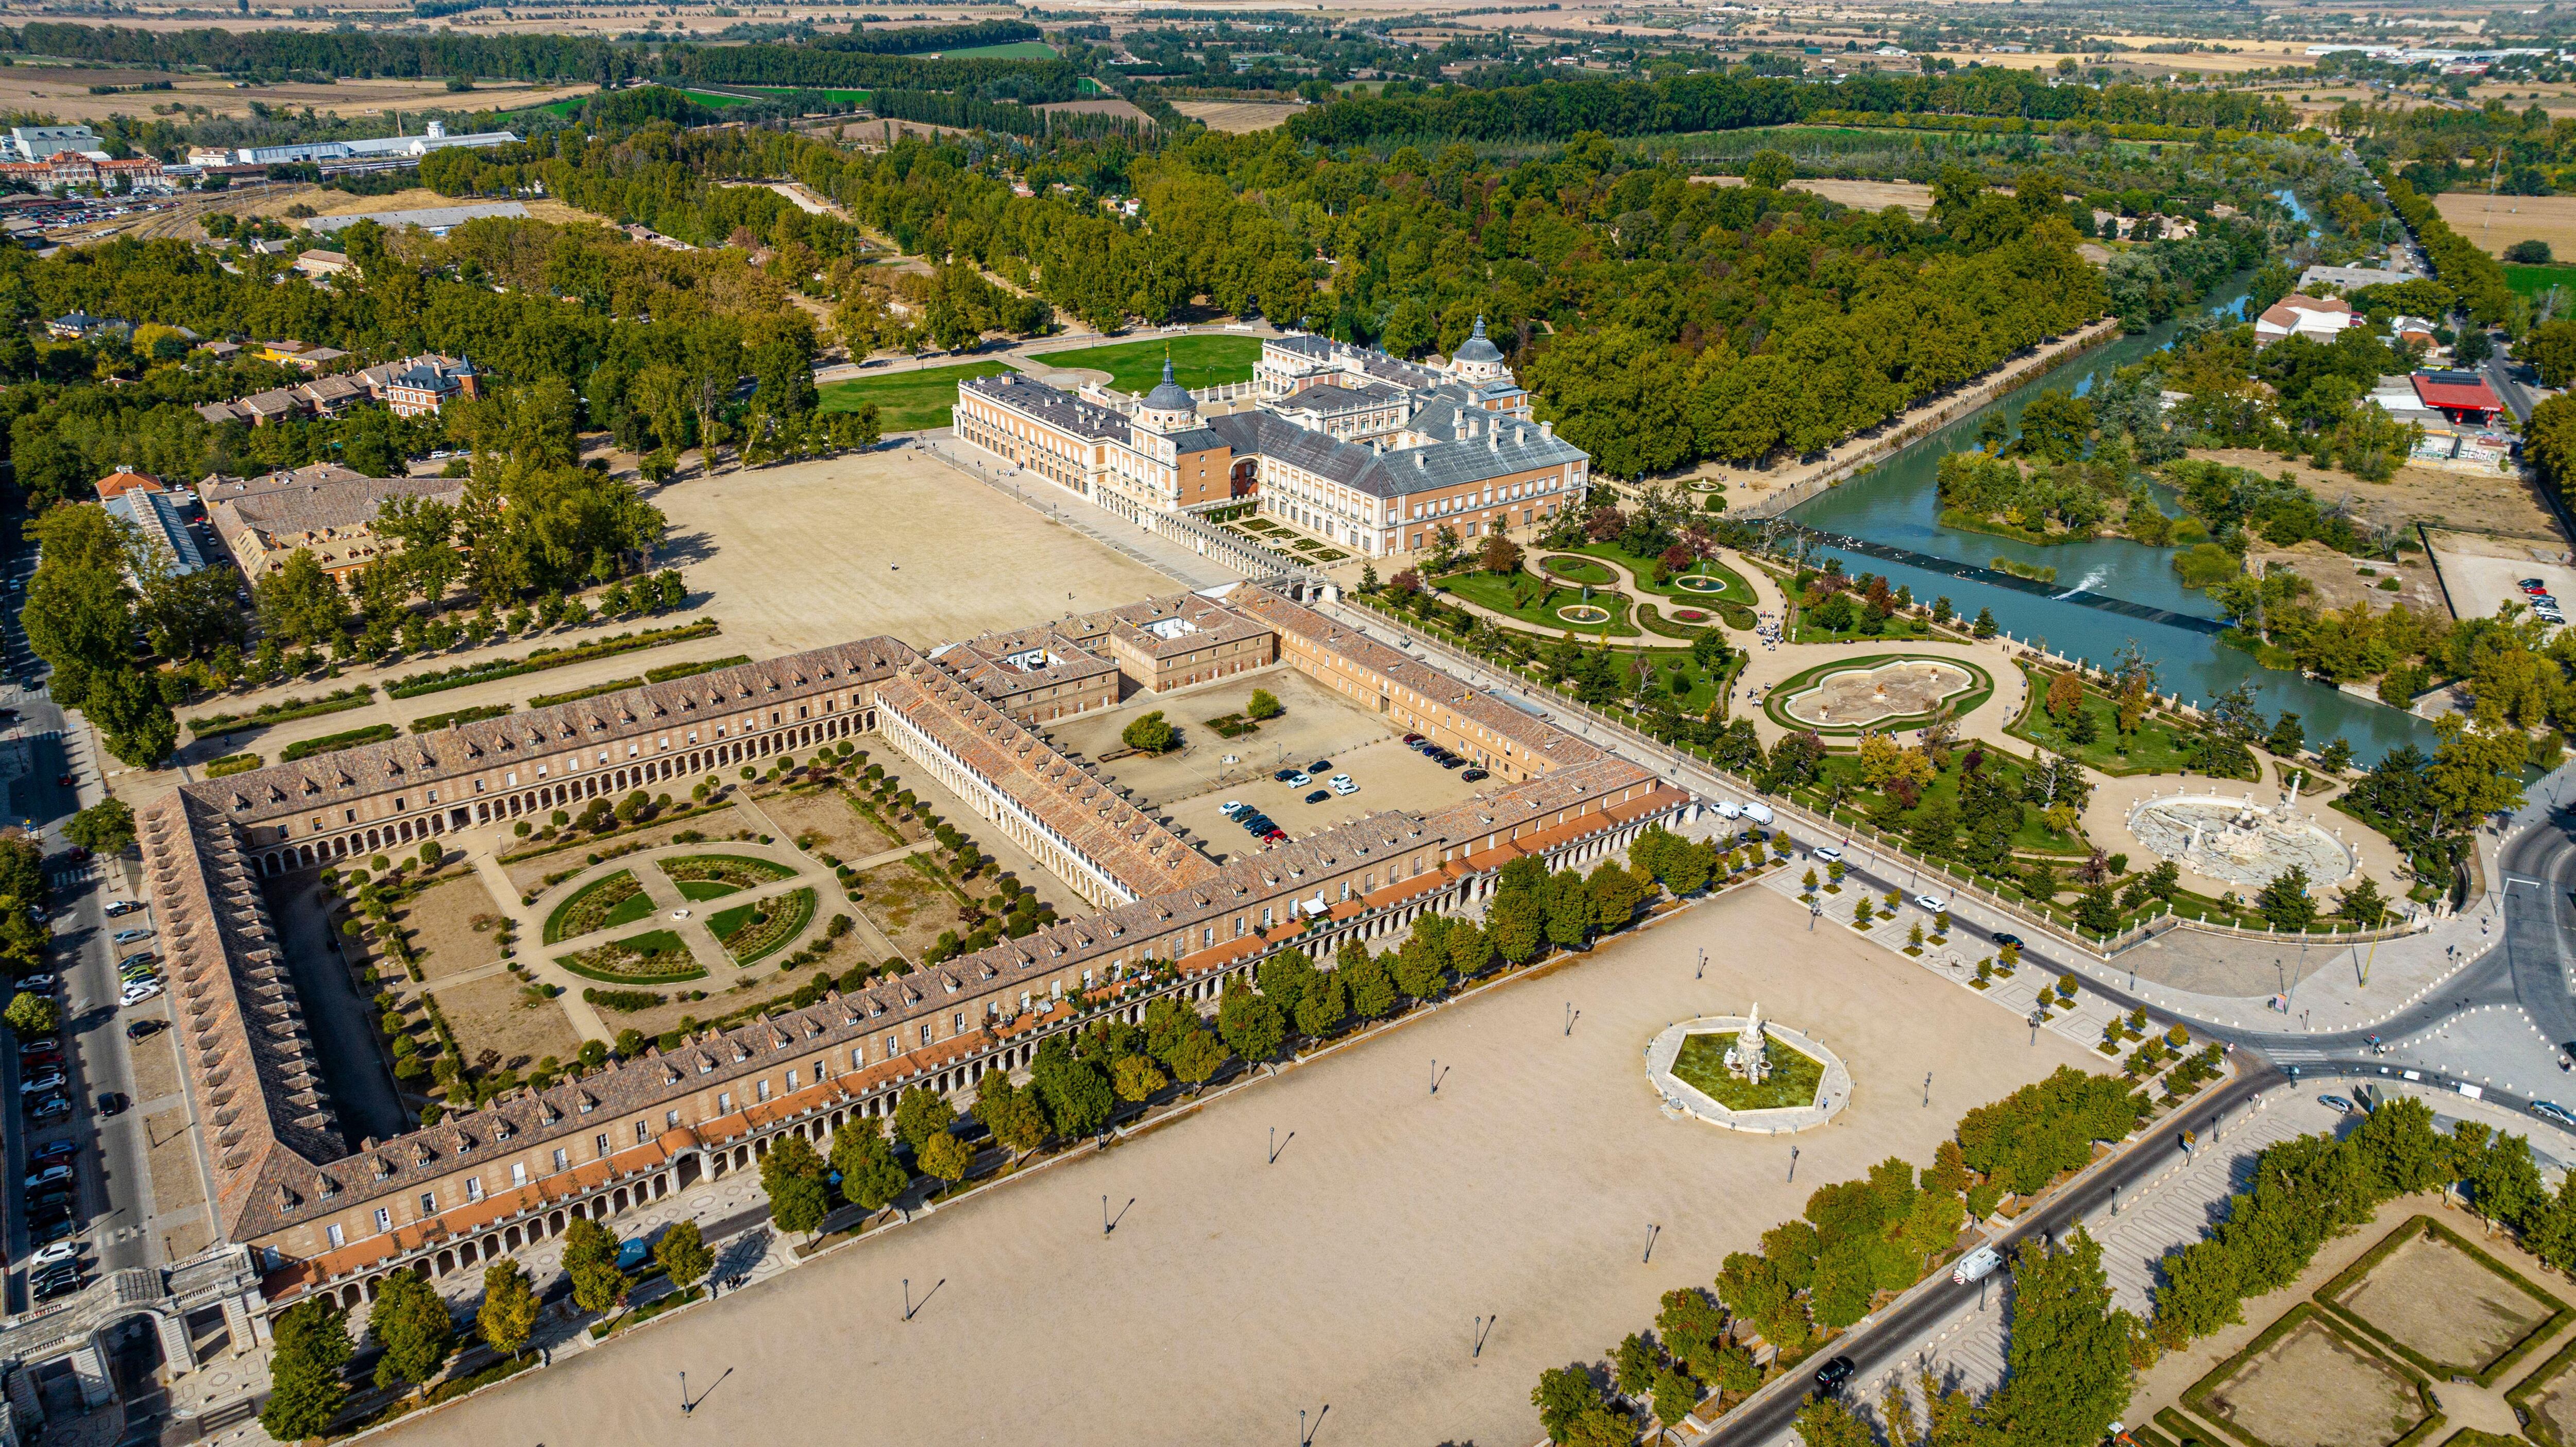 Vista área del Palacio Real de Aranjuez y sus jardines, patrimonio mundial de la Unesco.